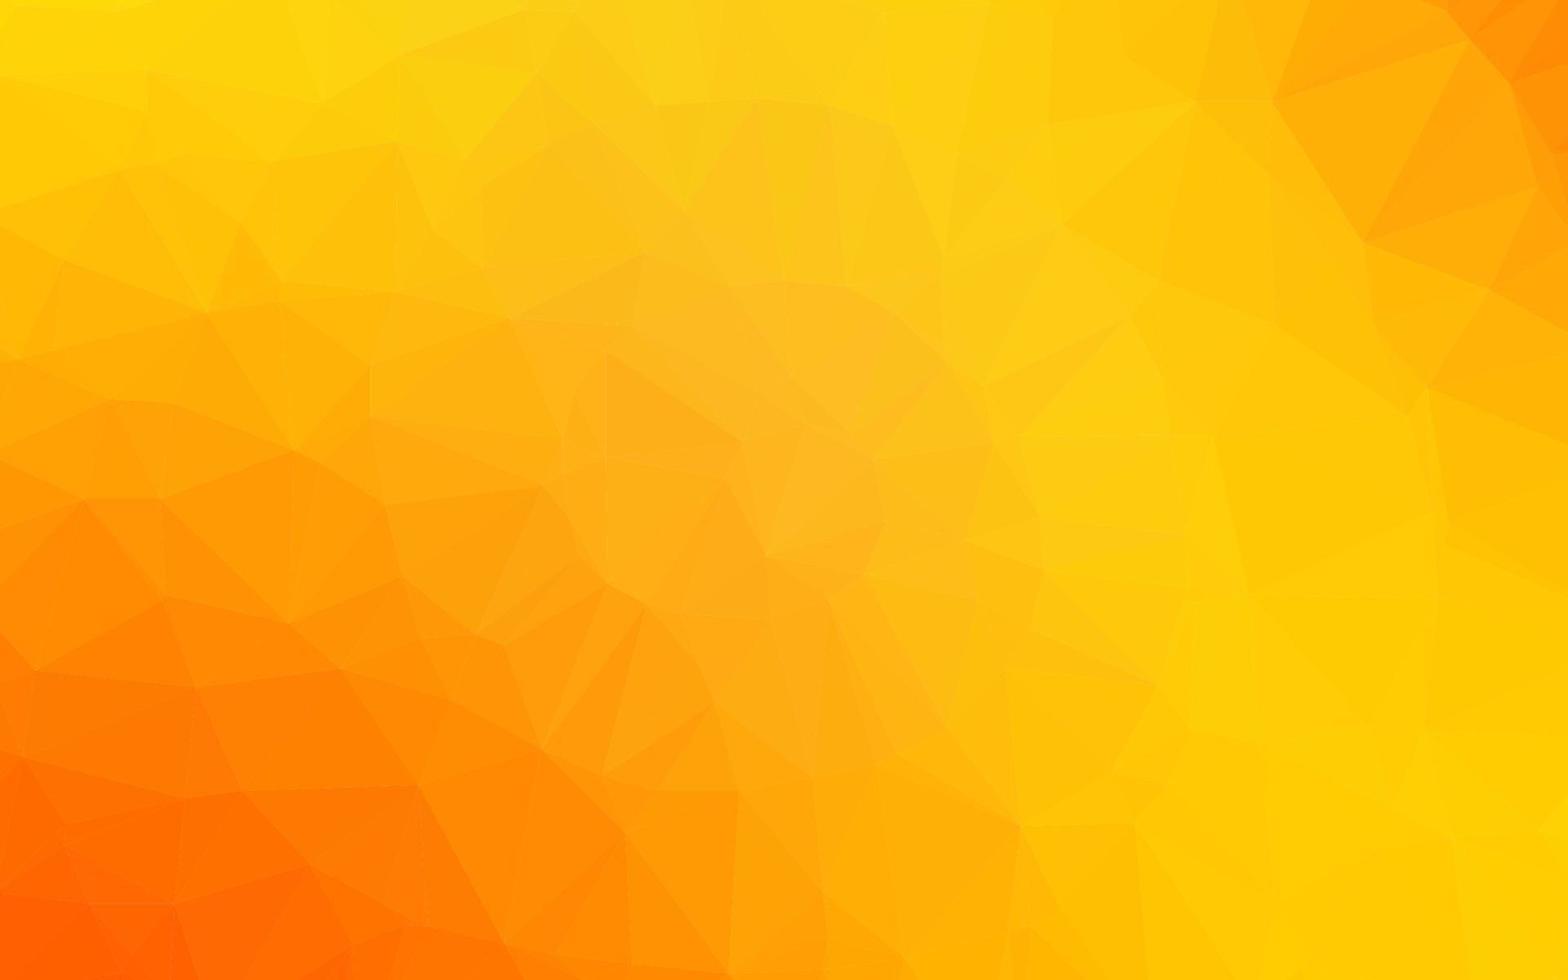 modelo poligonal de vetor amarelo claro, laranja.